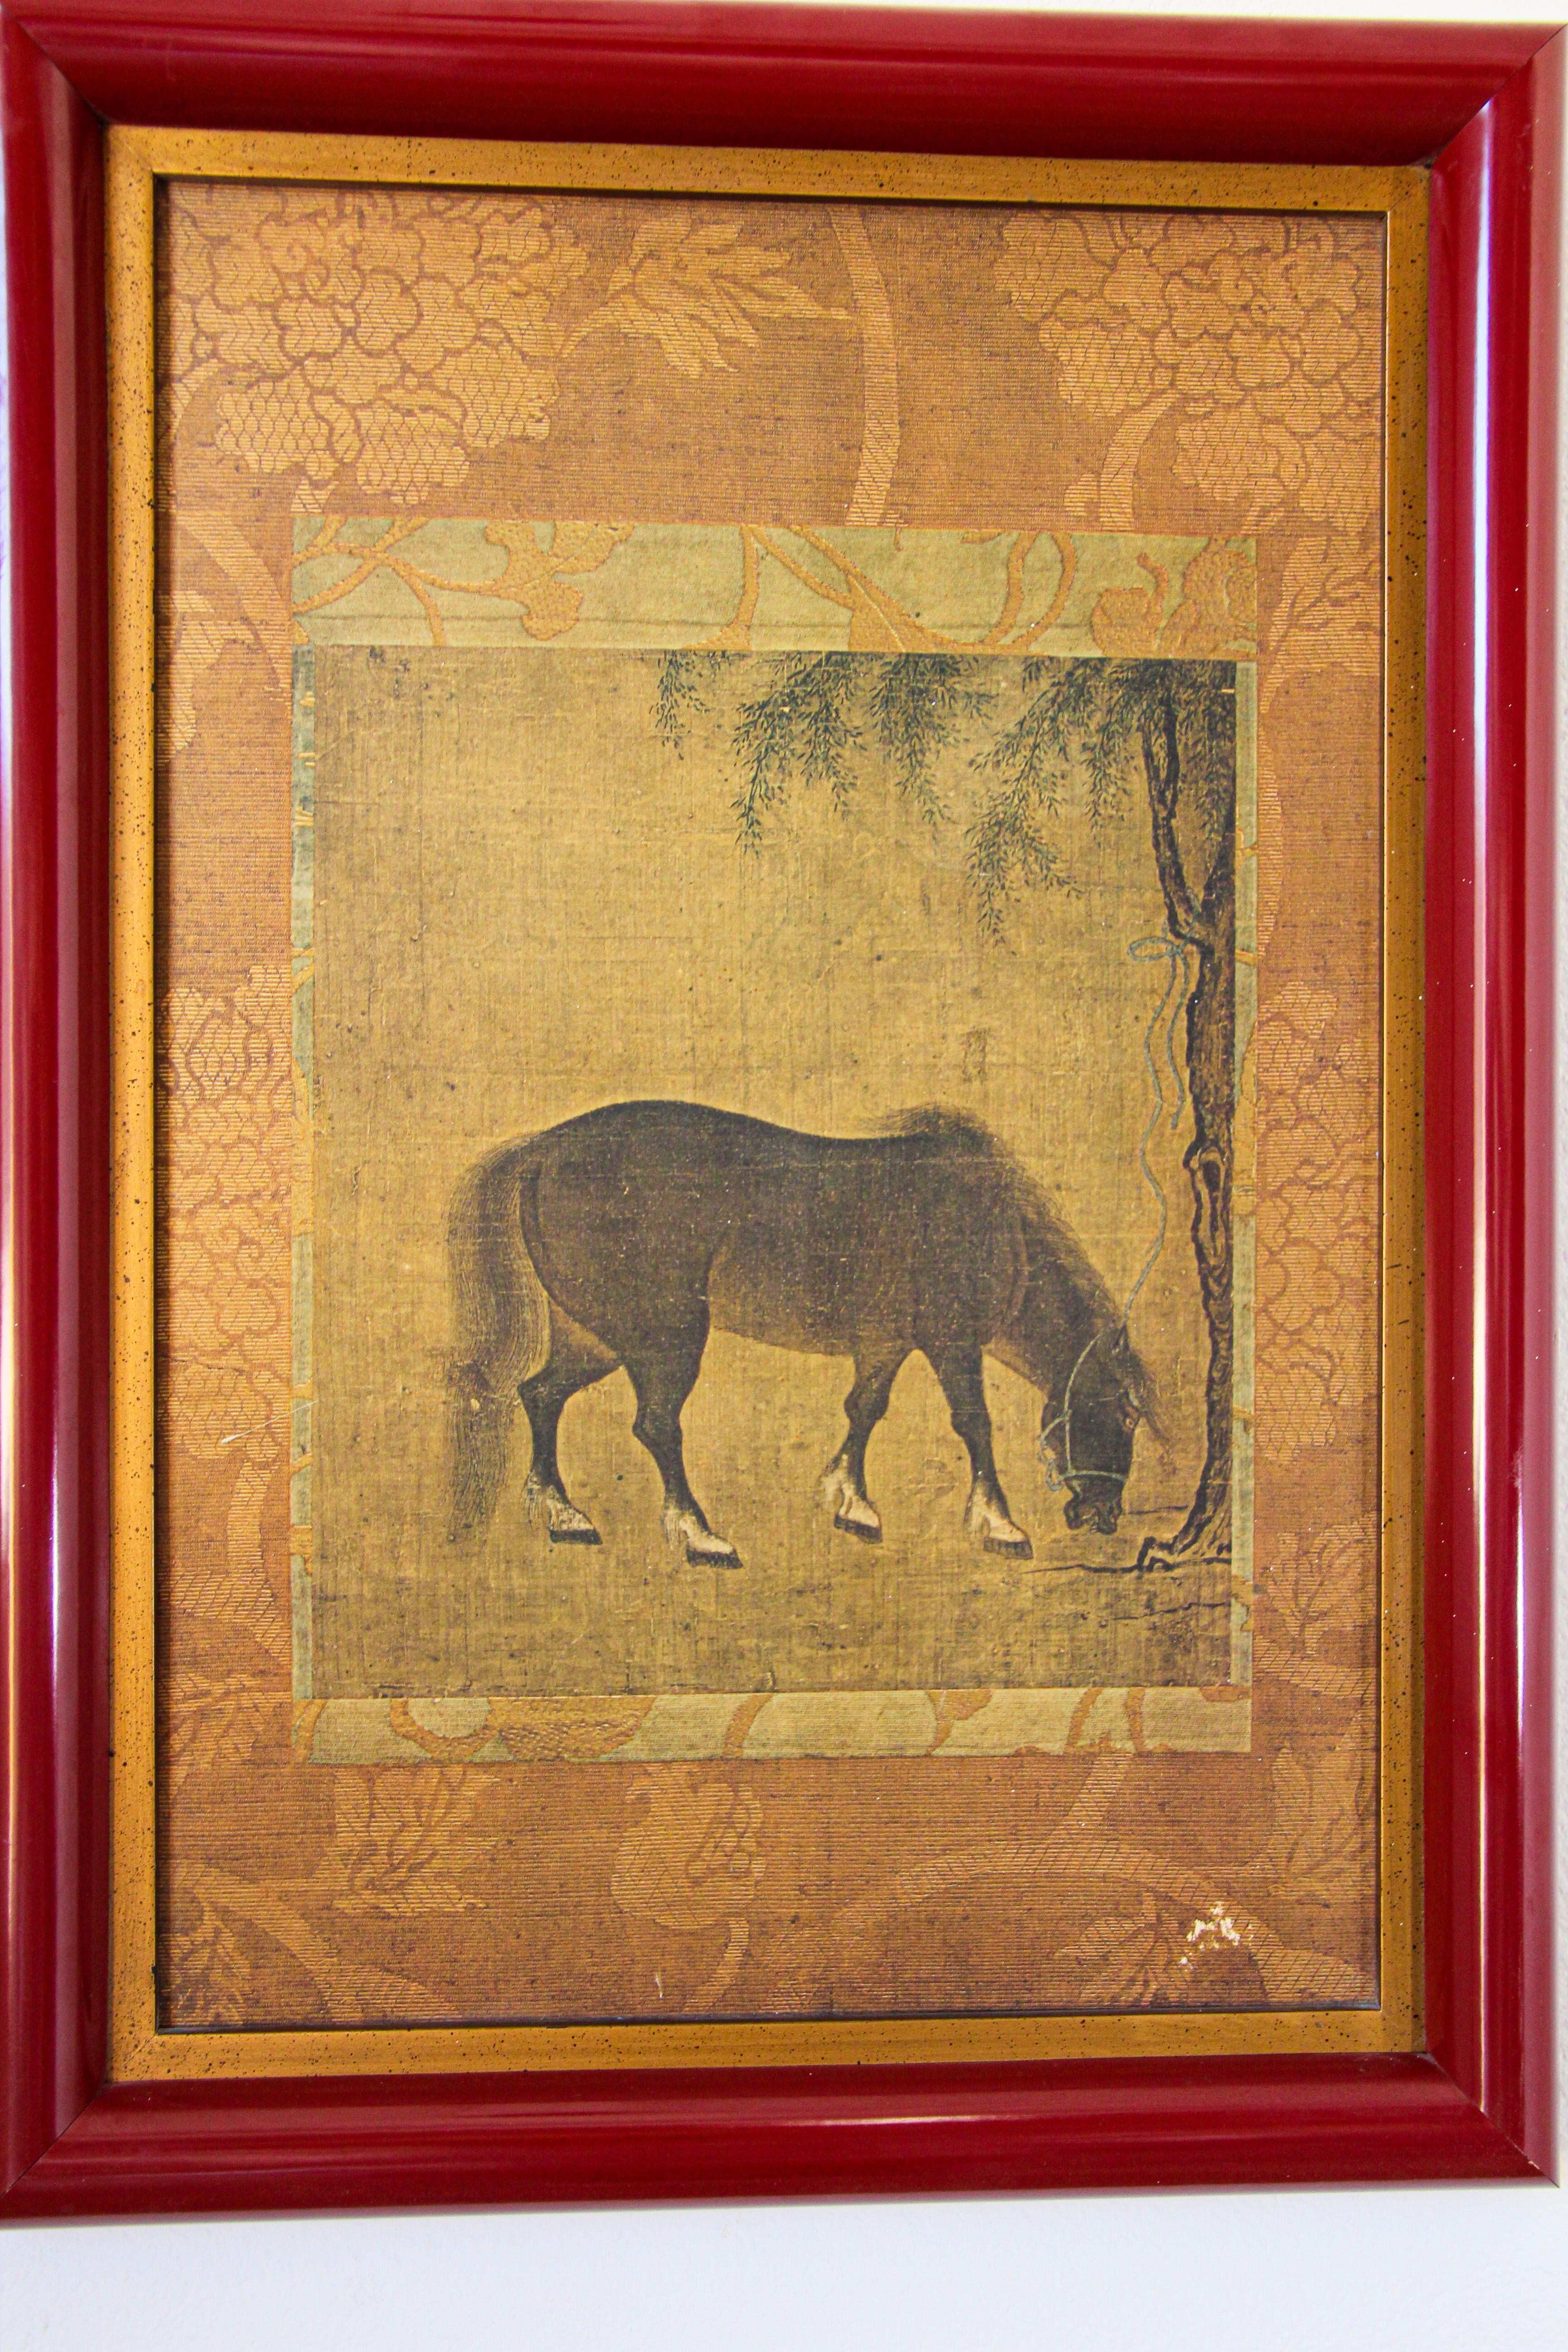 Impression asiatique de chevaux chinois dans un cadre en bois rouge.
Lithographie chinoise, étude d'un cheval.
Bien encadré, sans verre.
Taille : 21